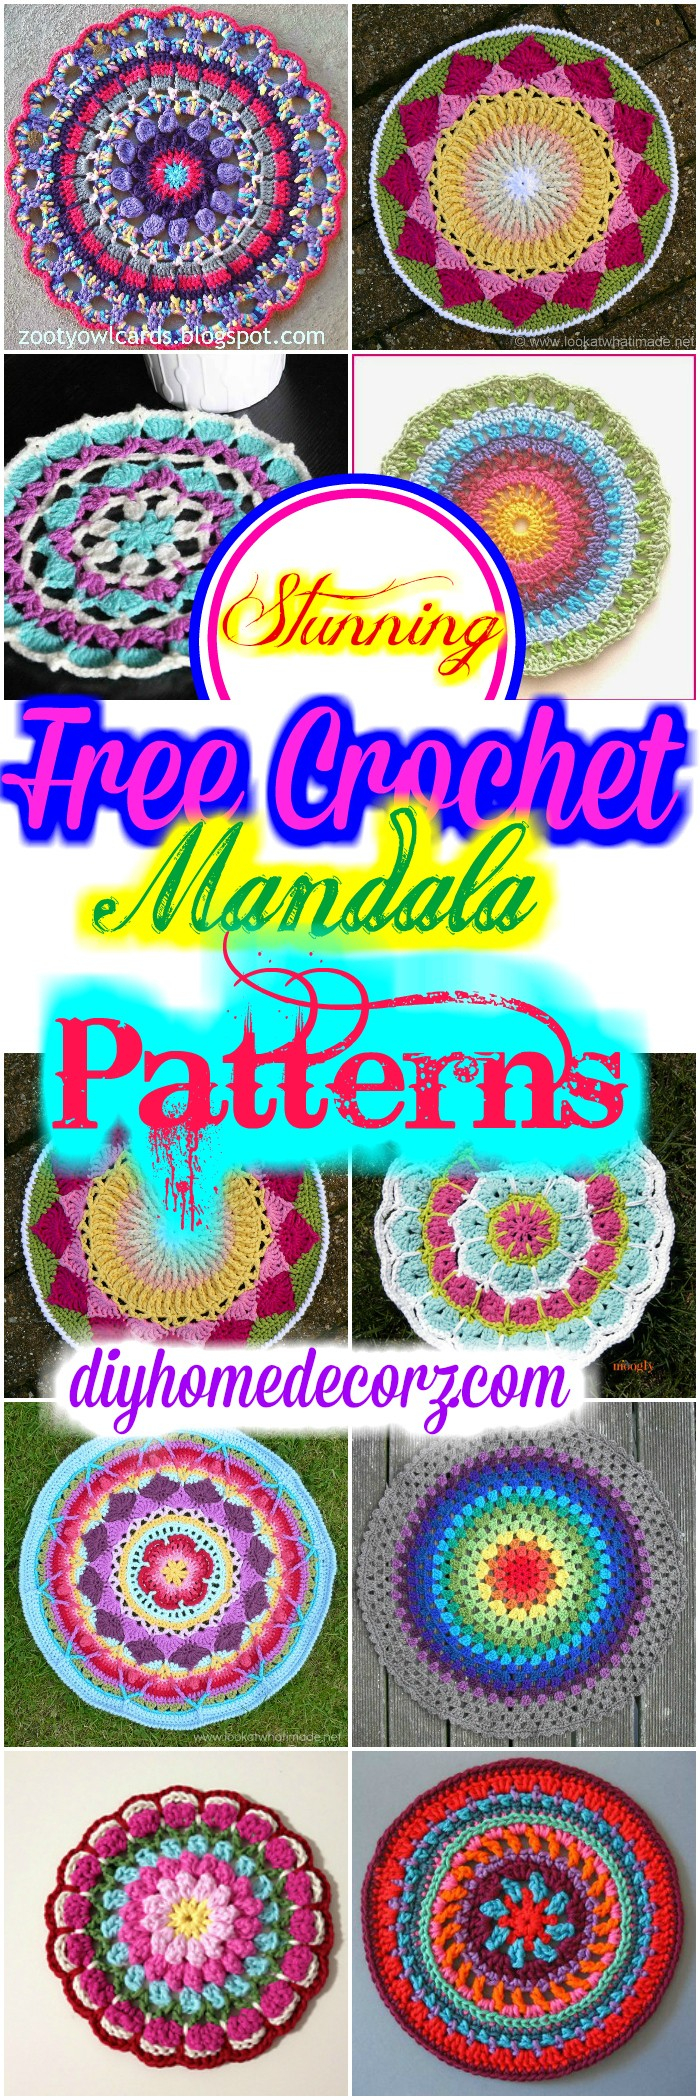 Free Crochet Mandala Pattern 15crochet Mandala Patterns Free Patterns Diy Home Decor